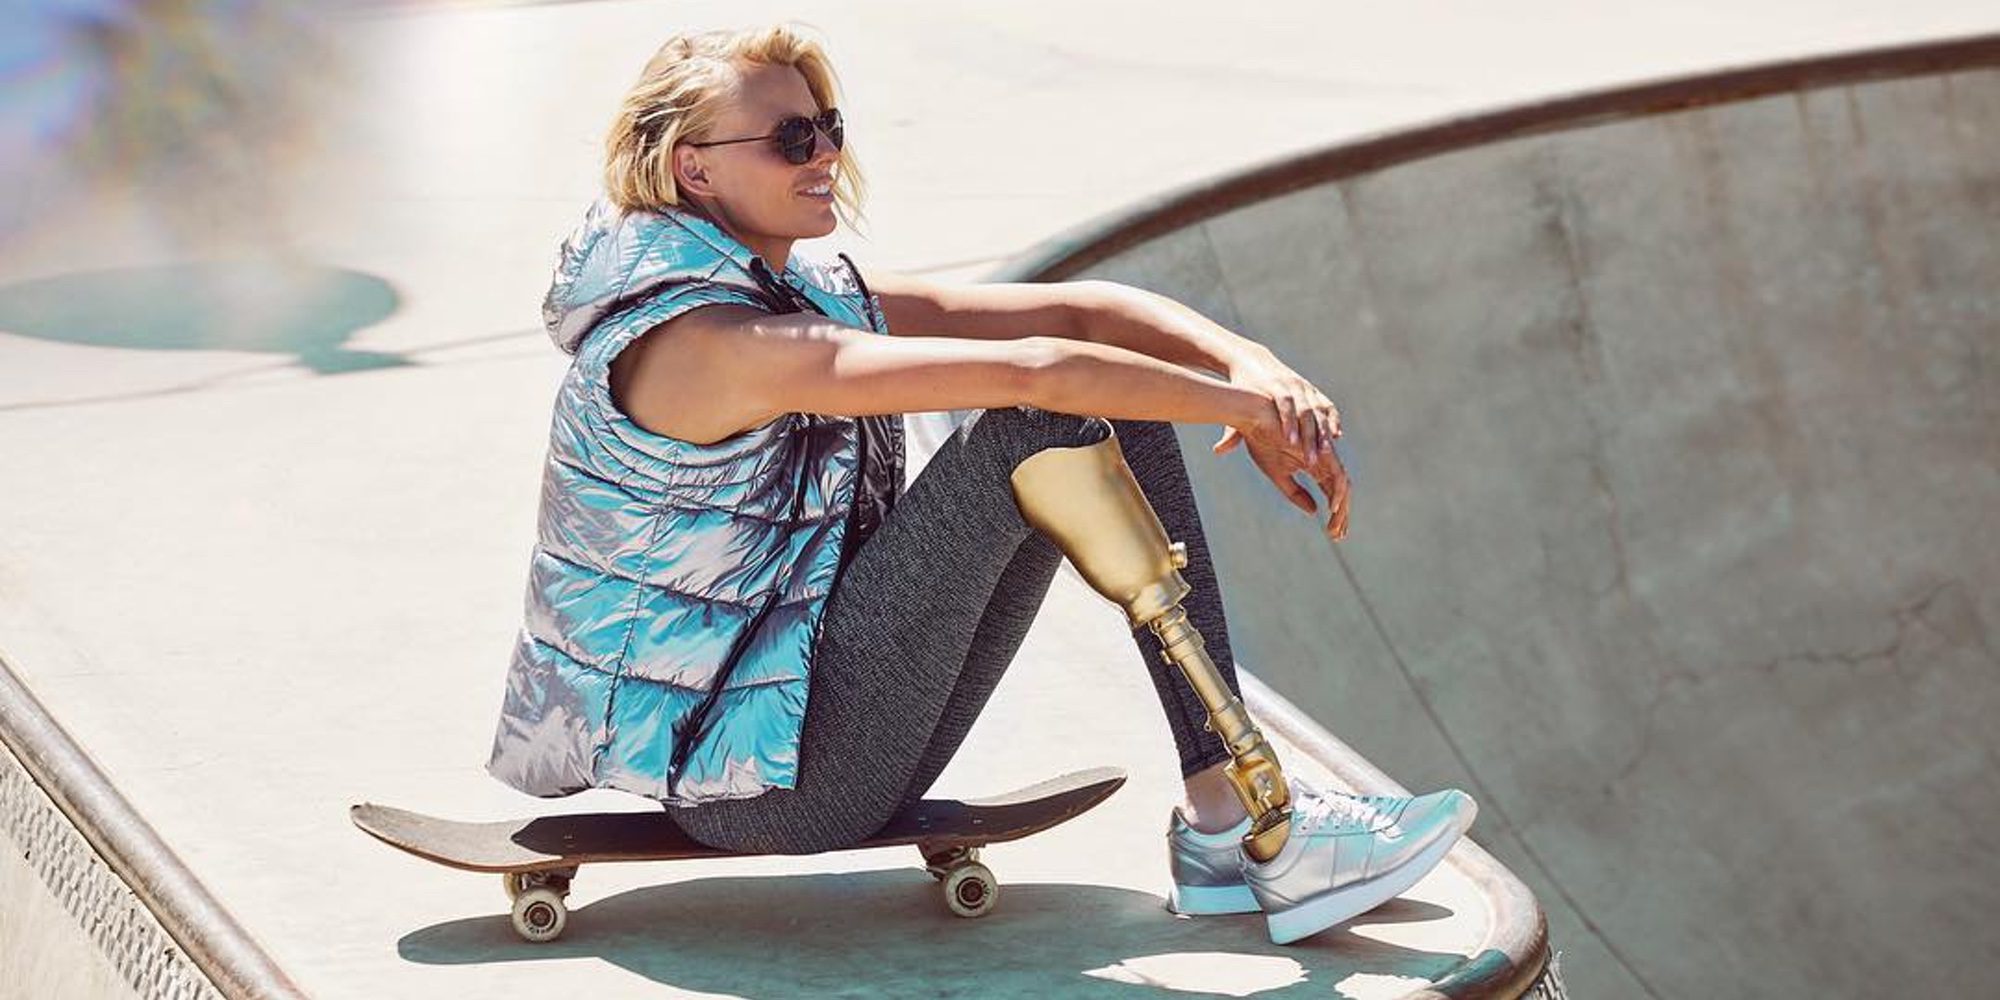 La modelo Lauren Wasser perderá una de sus piernas después de que le amputaran la otra cinco años atrás